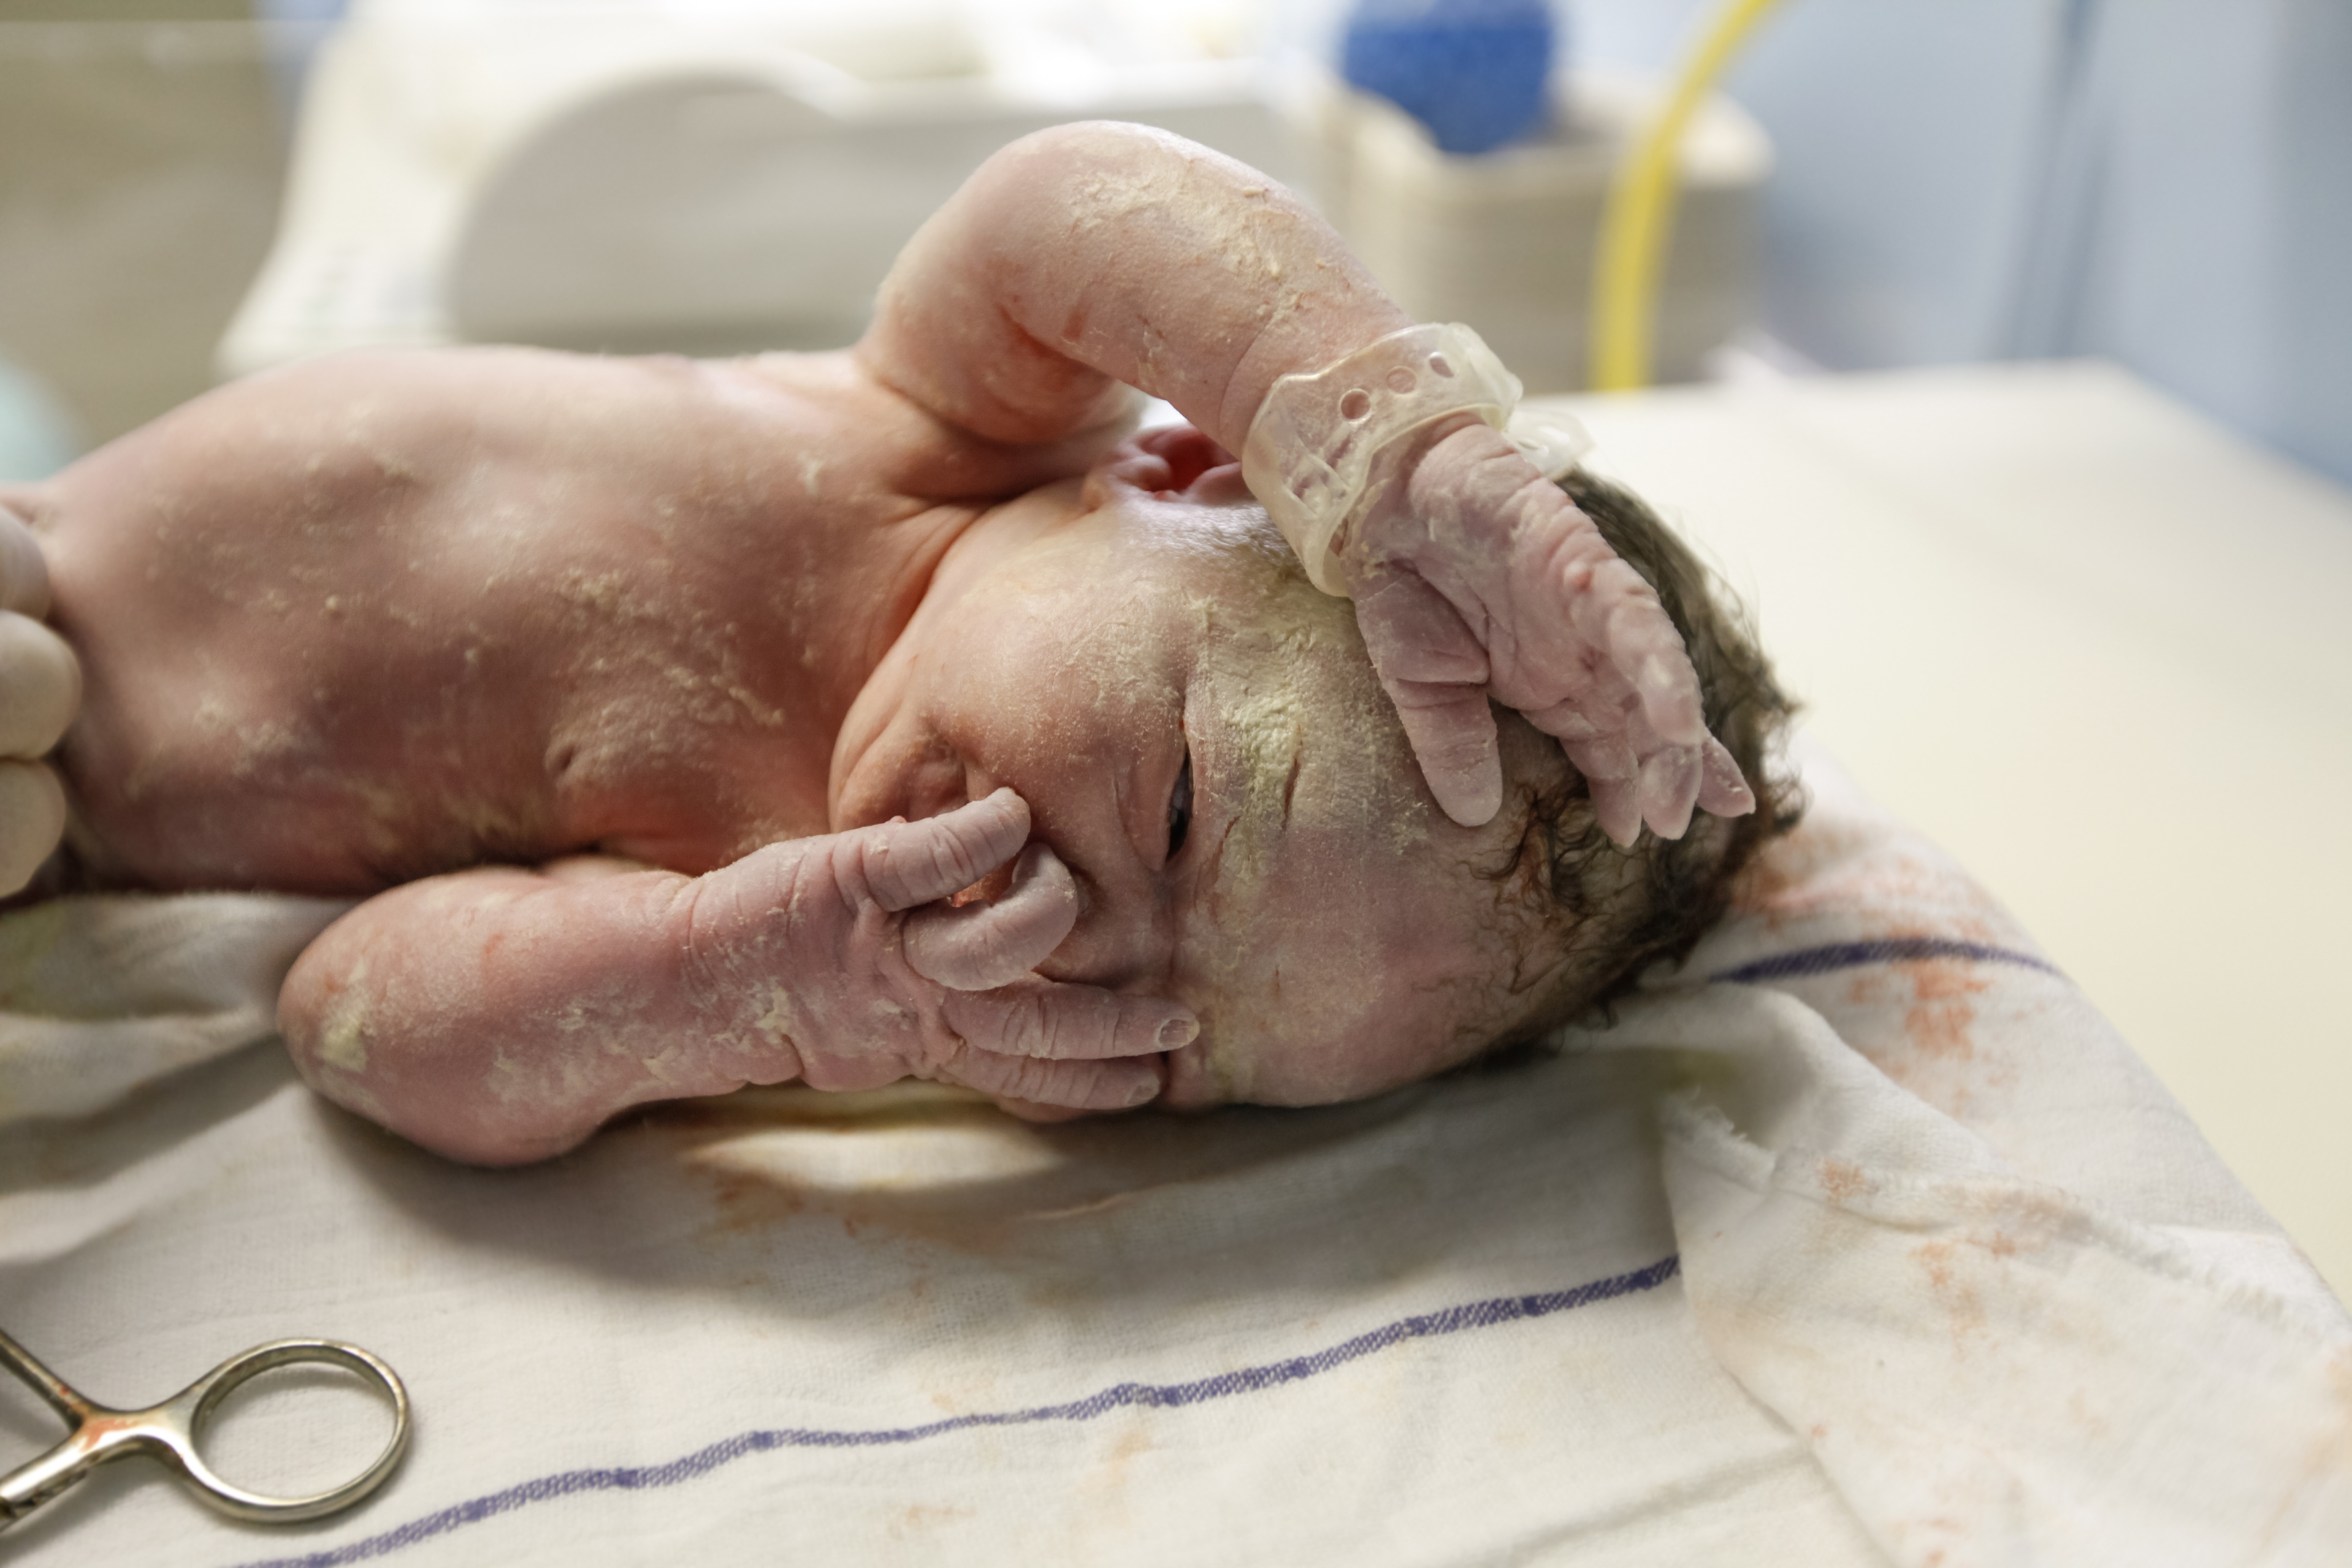 Recém-nascido coberto de vérnix deitado sobre tecido branco. Está com uma mãozinha em cima da boca/nariz e outra na testa